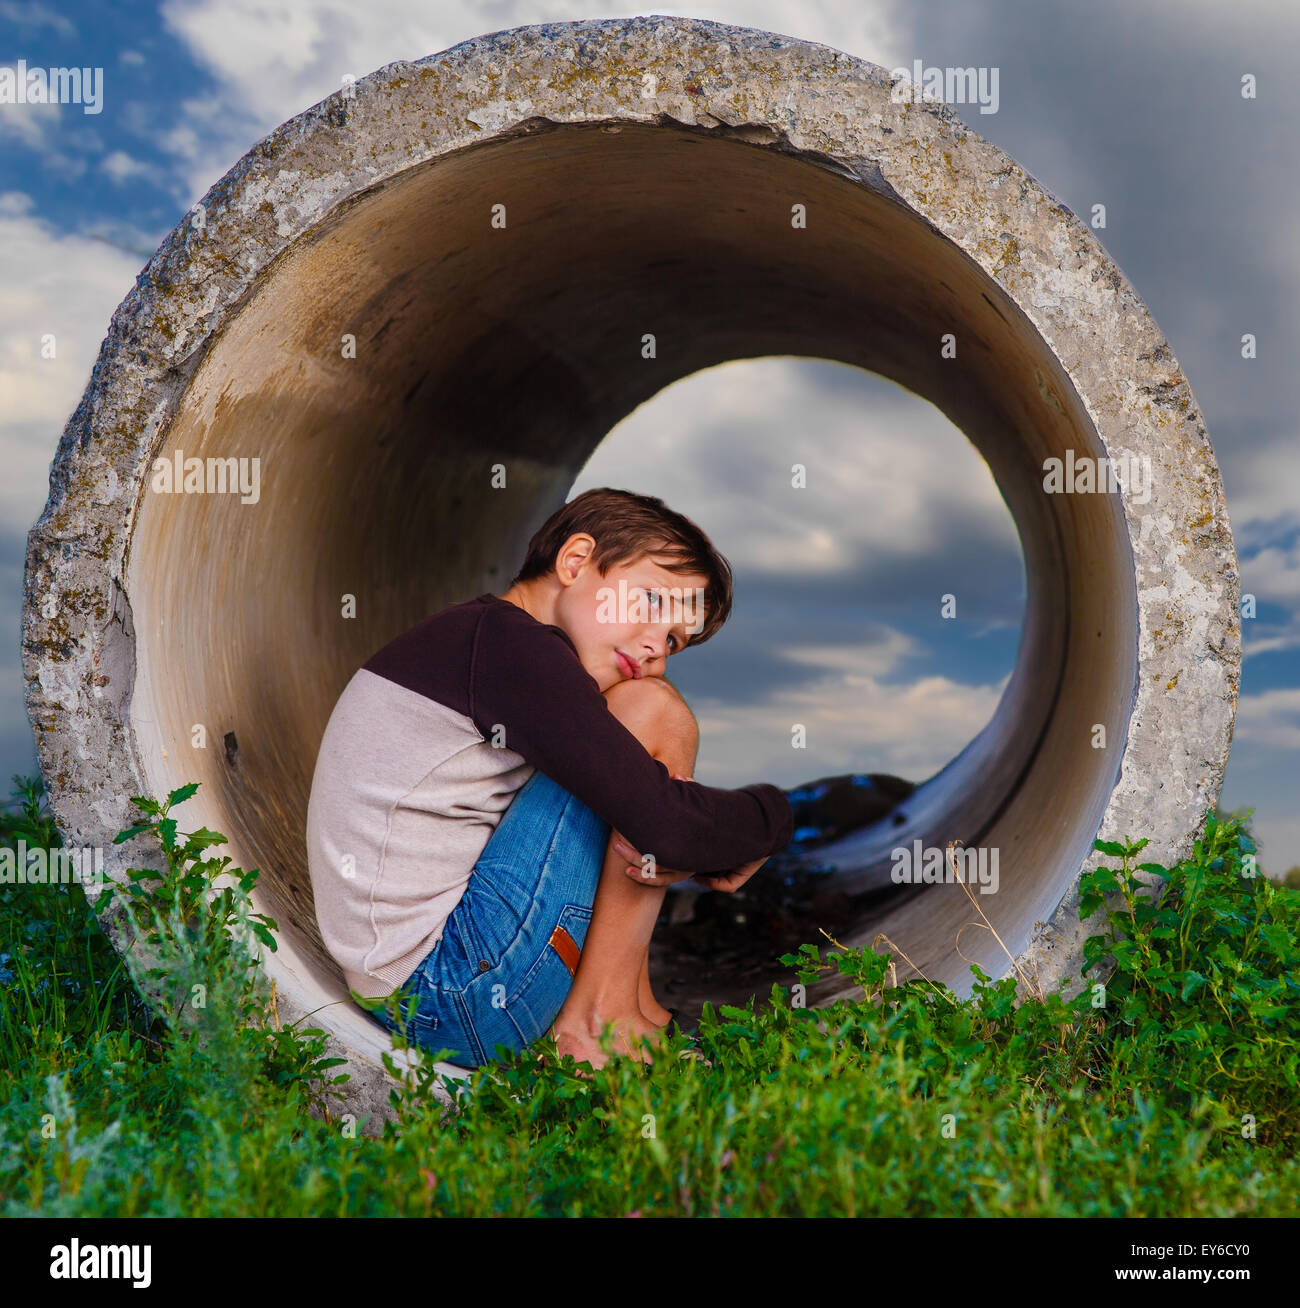 Senzatetto ragazzo adolescente triste seduta nel tubo di calcestruzzo agoraphob Foto Stock